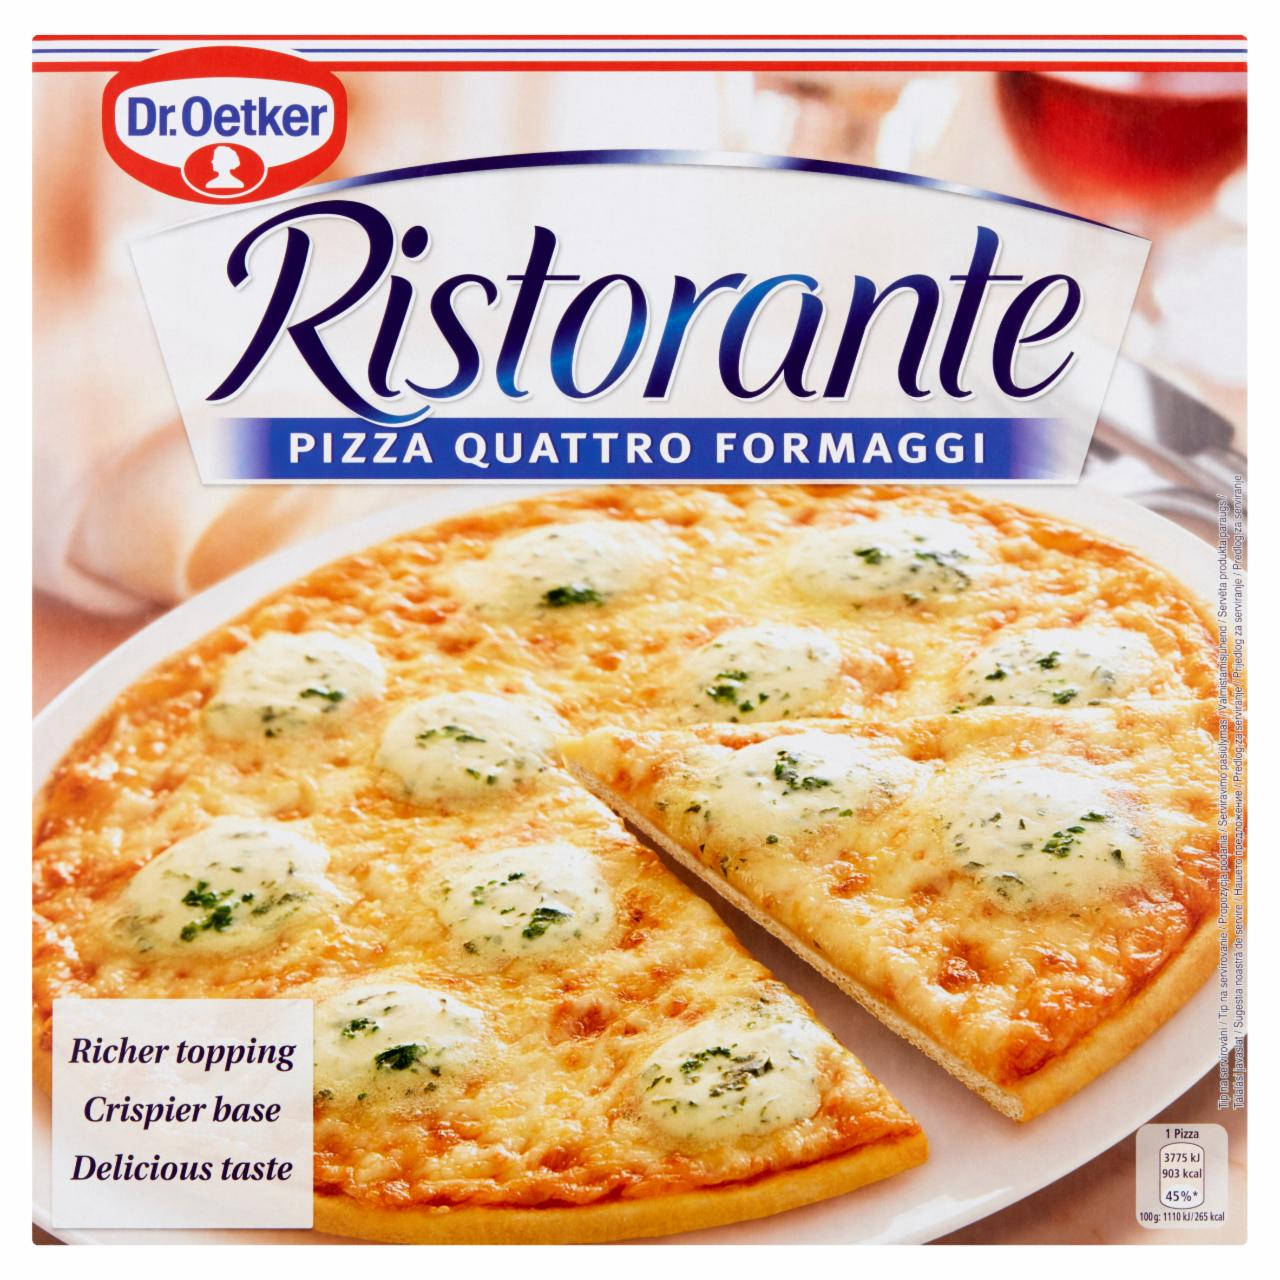 Zdjęcia - Ristorante pizza quattro formaggi Dr.Oetker